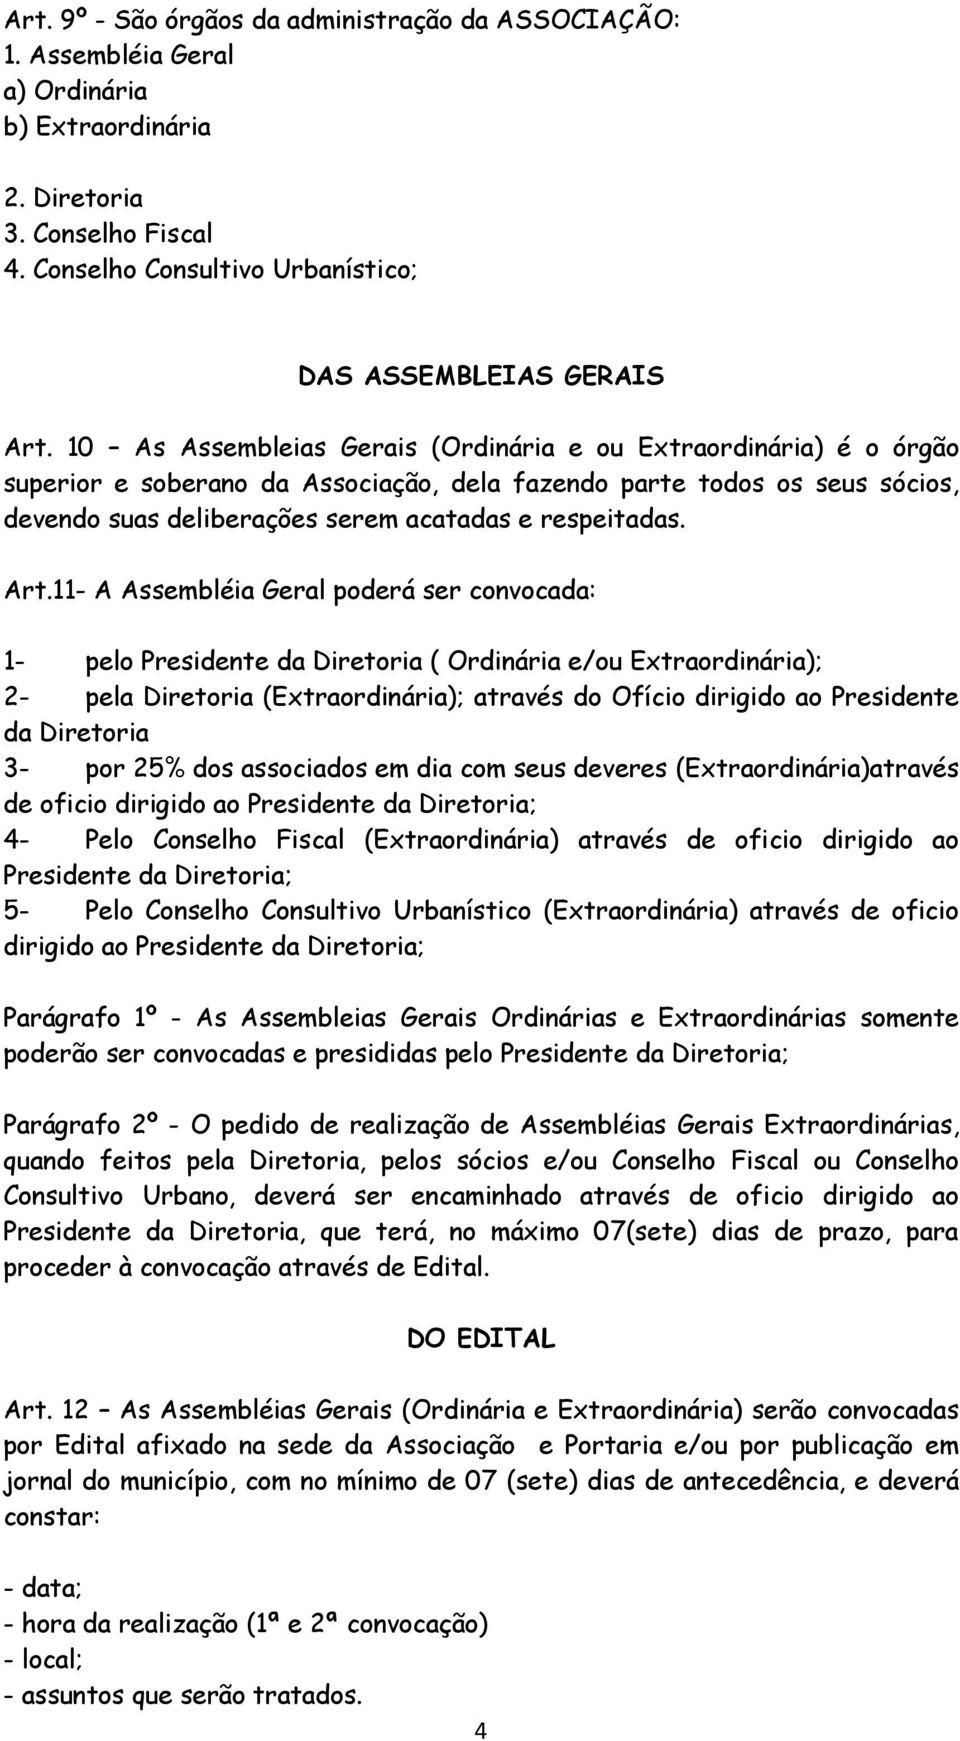 Art.11- A Assembléia Geral poderá ser convocada: 1- pelo Presidente da Diretoria ( Ordinária e/ou Extraordinária); 2- pela Diretoria (Extraordinária); através do Ofício dirigido ao Presidente da